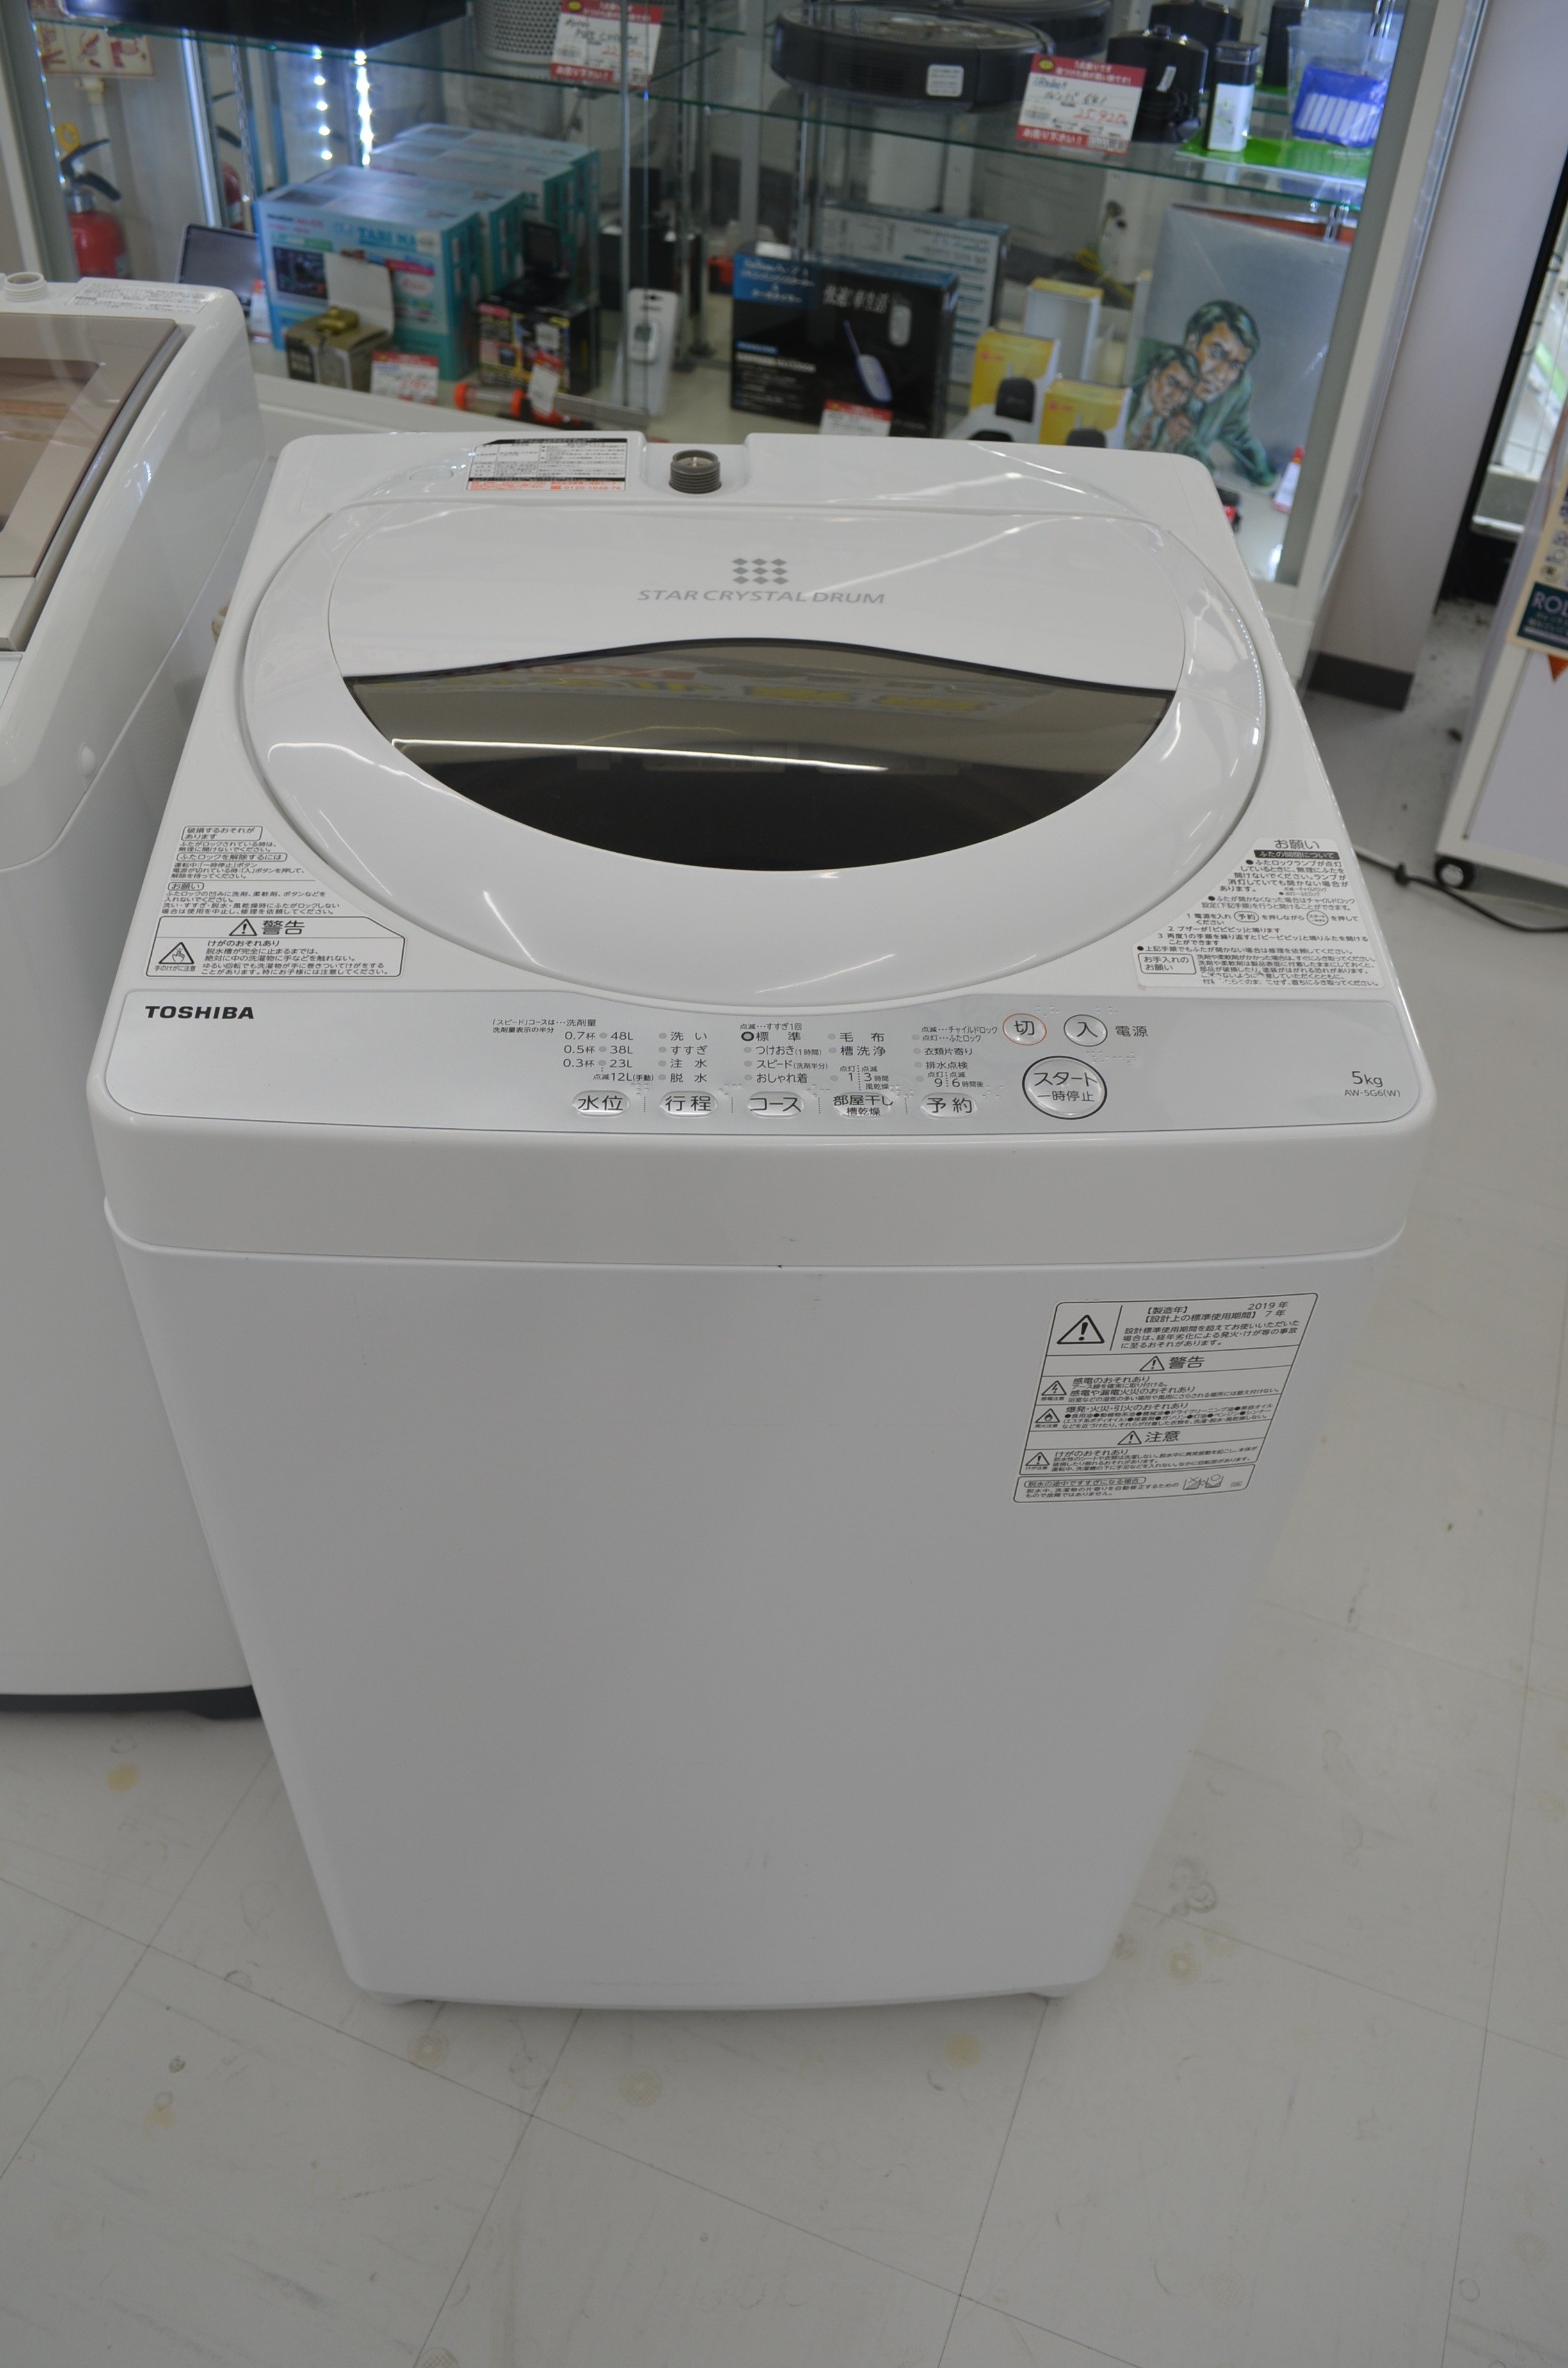 622取付無料 大人気東芝スタークリスタルドラム高性能風乾燥搭載おしゃれ洗濯機 新着商品